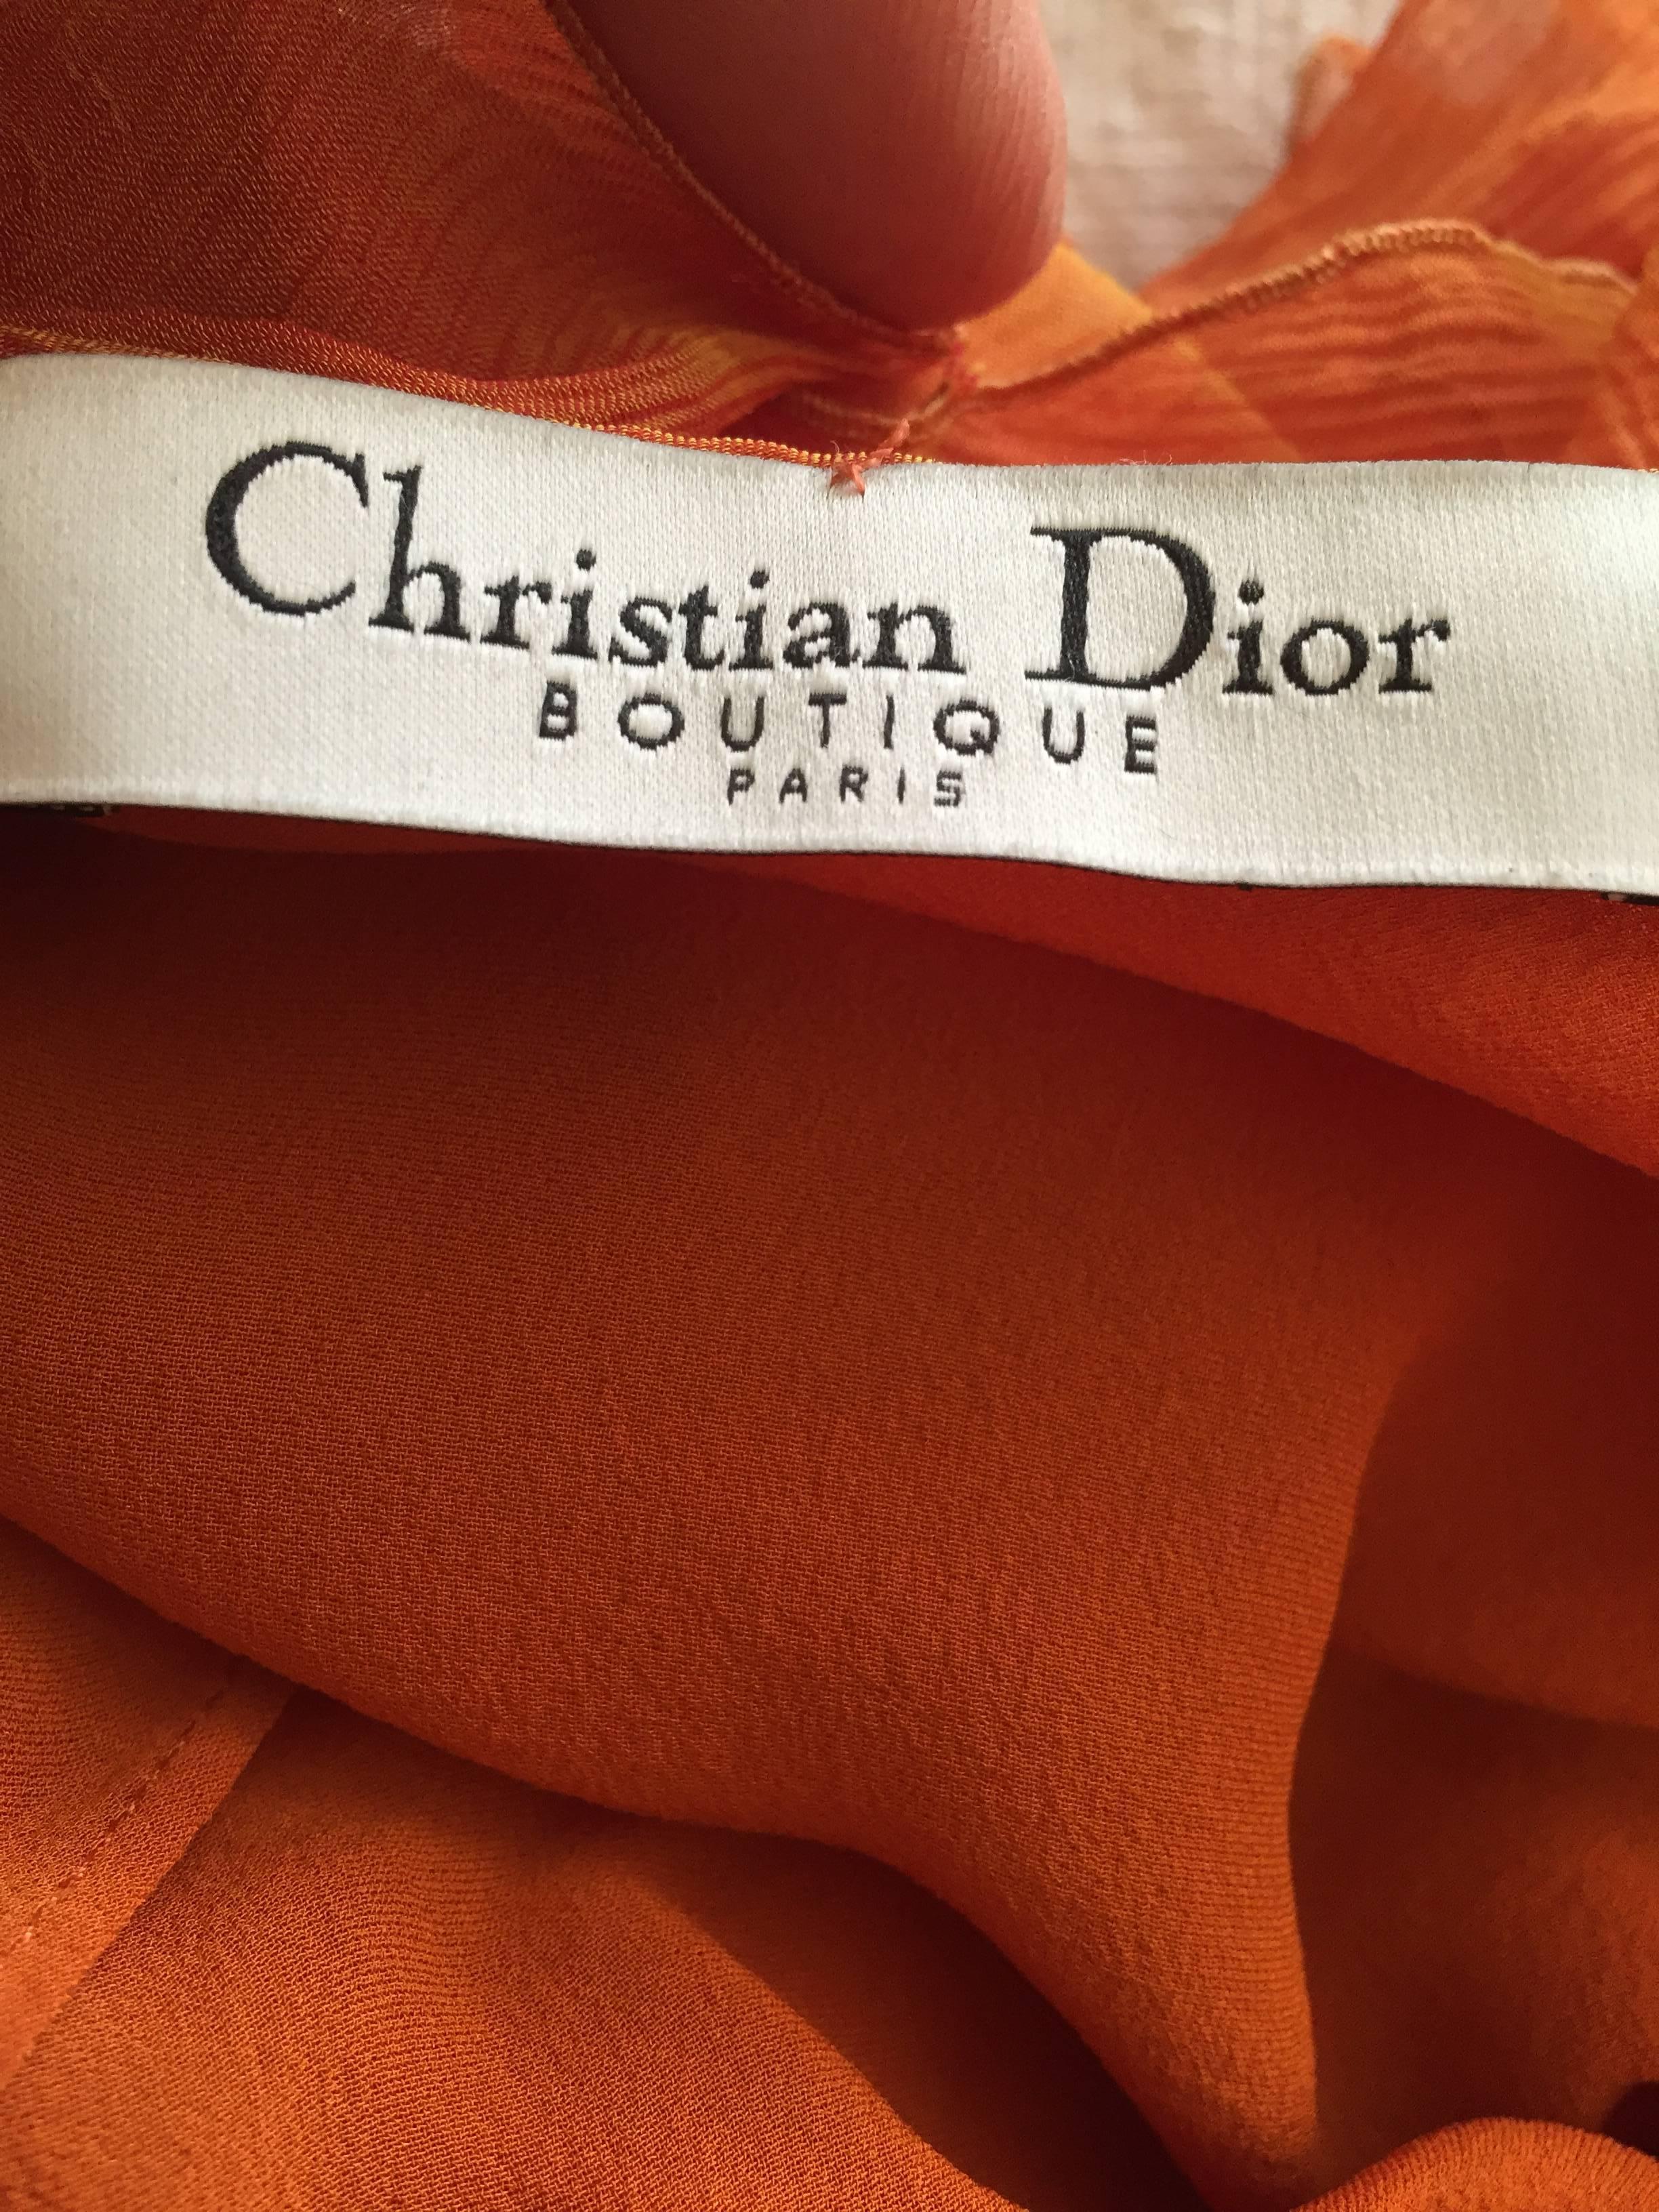 John Galliano for Christian Dior Bias Cut Ruffle Evening Dress 2